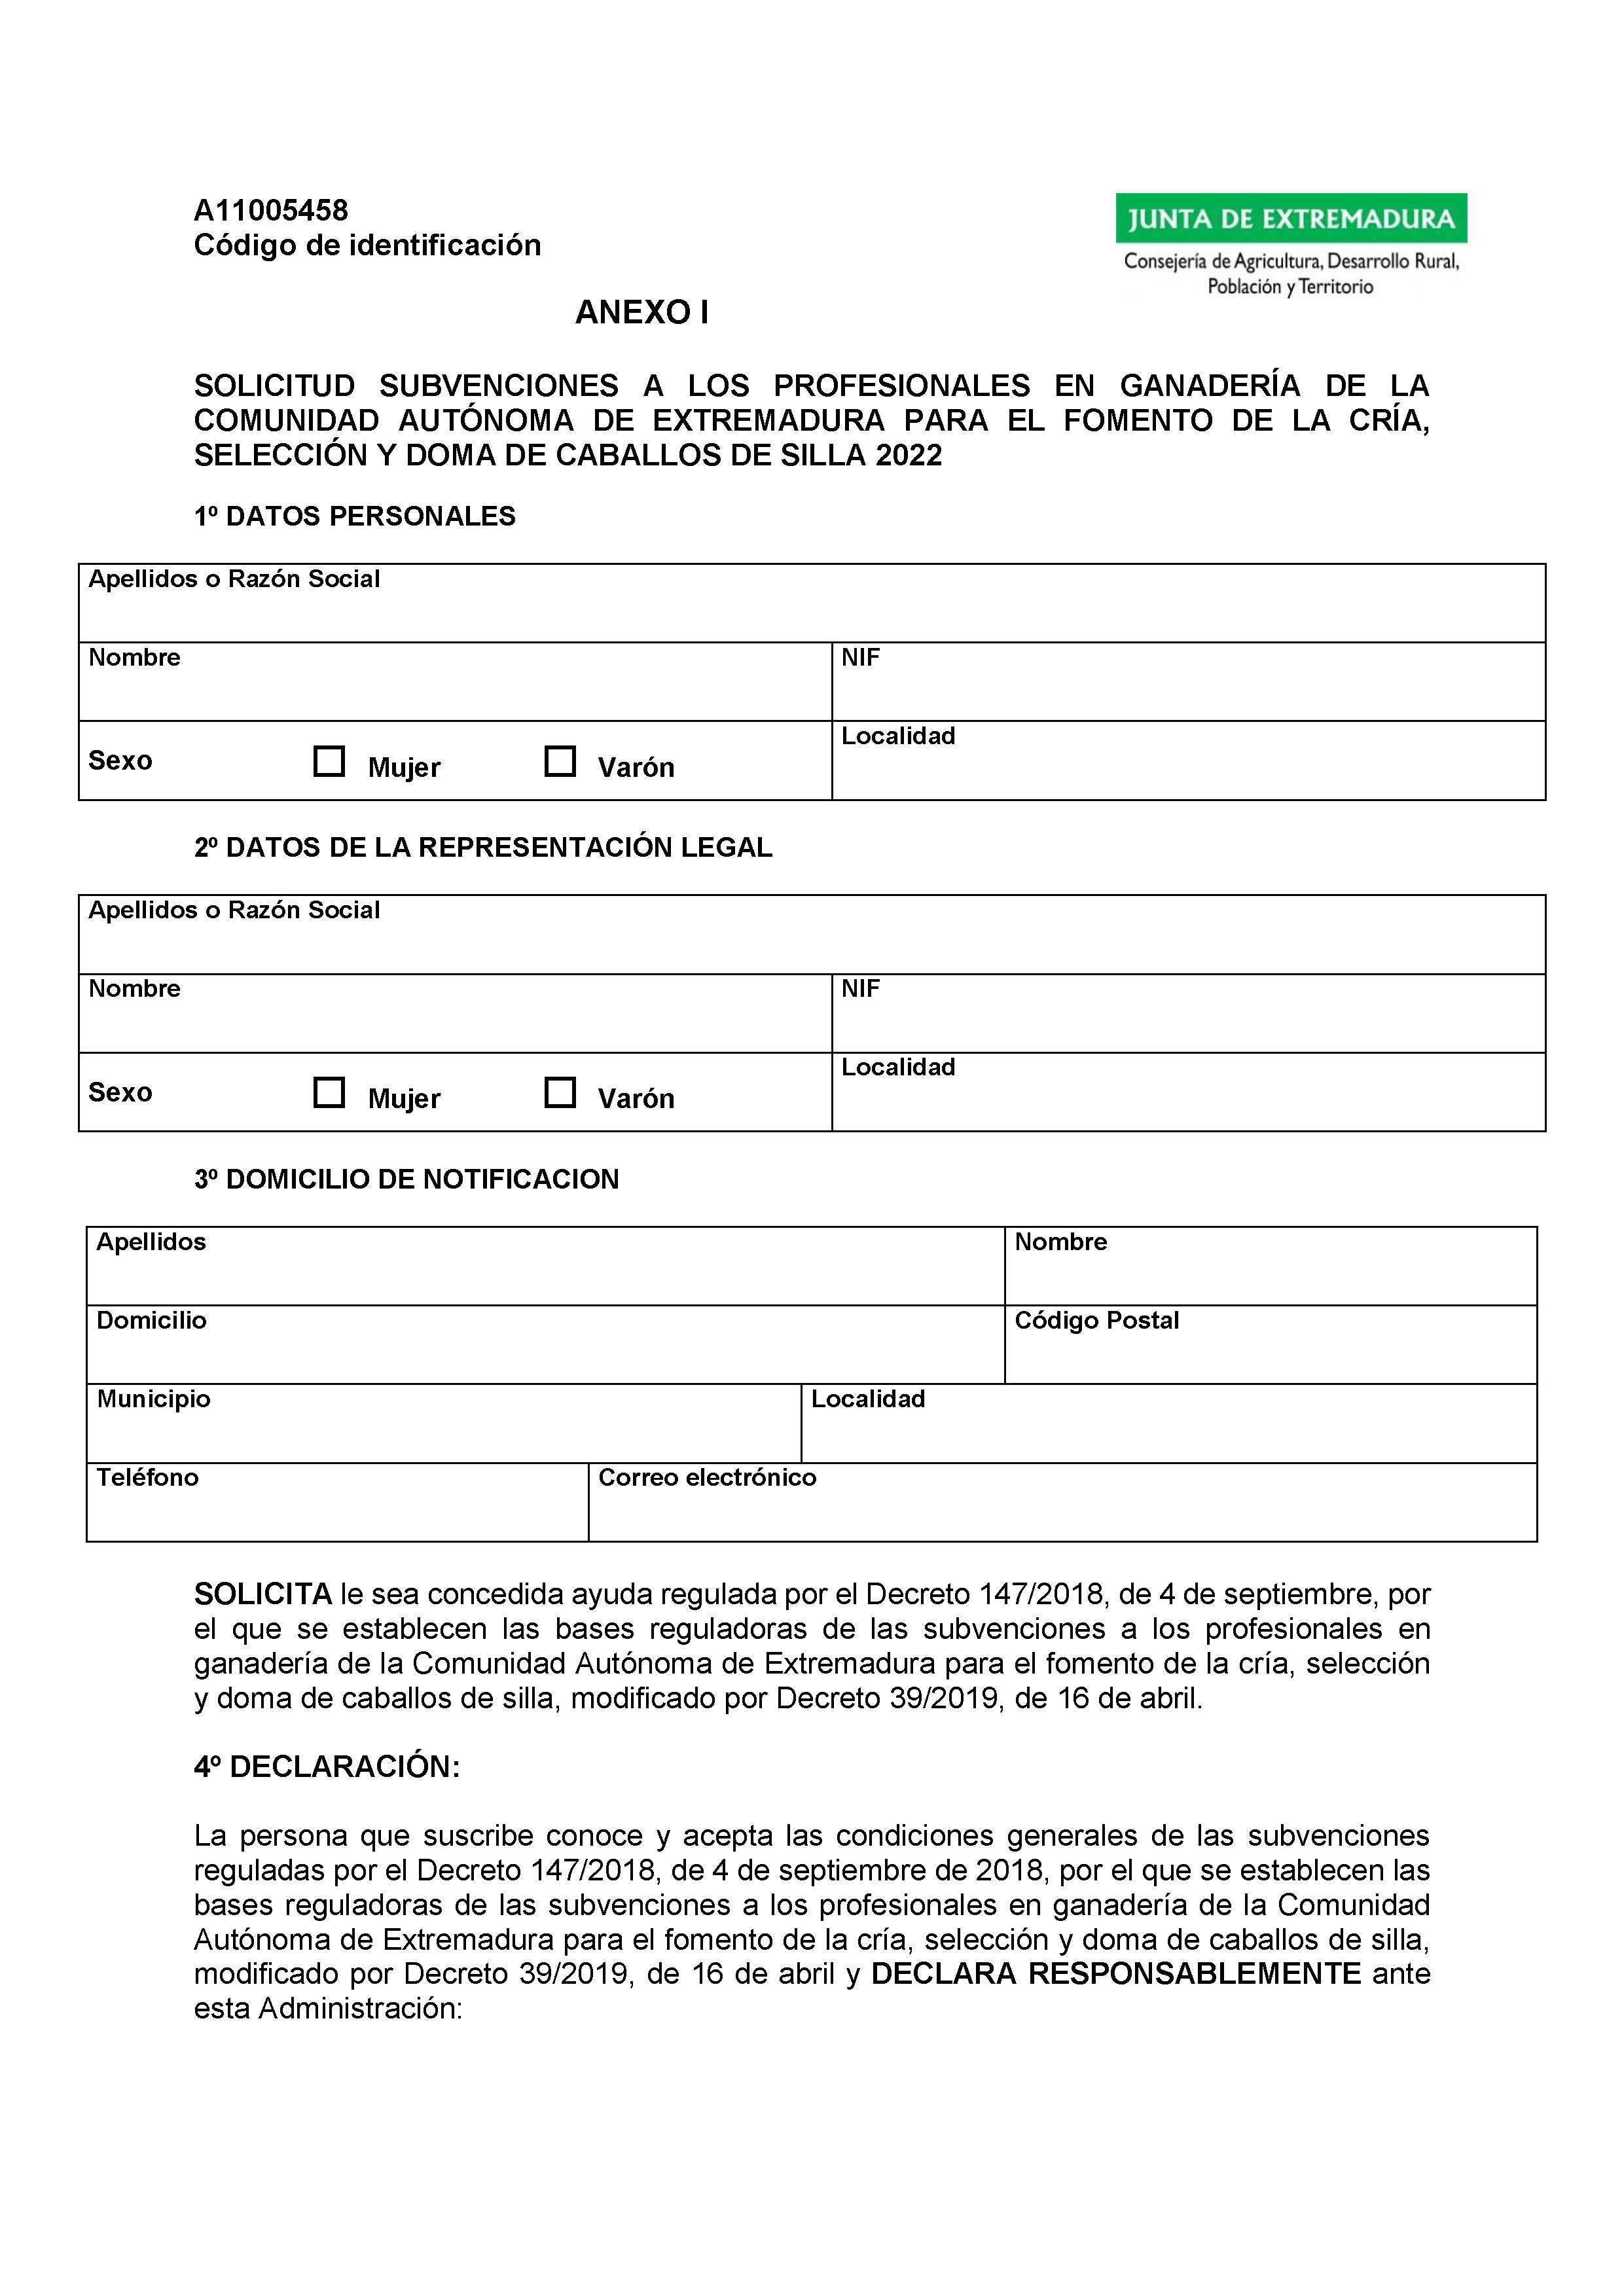 ANEXO I SOLICITUD SUBVENCIONES A LOS PROFESIONALES EN GANADERIA DE LA COMUNIDAD AUTONOMA DE EXTREMADURA Pag 1